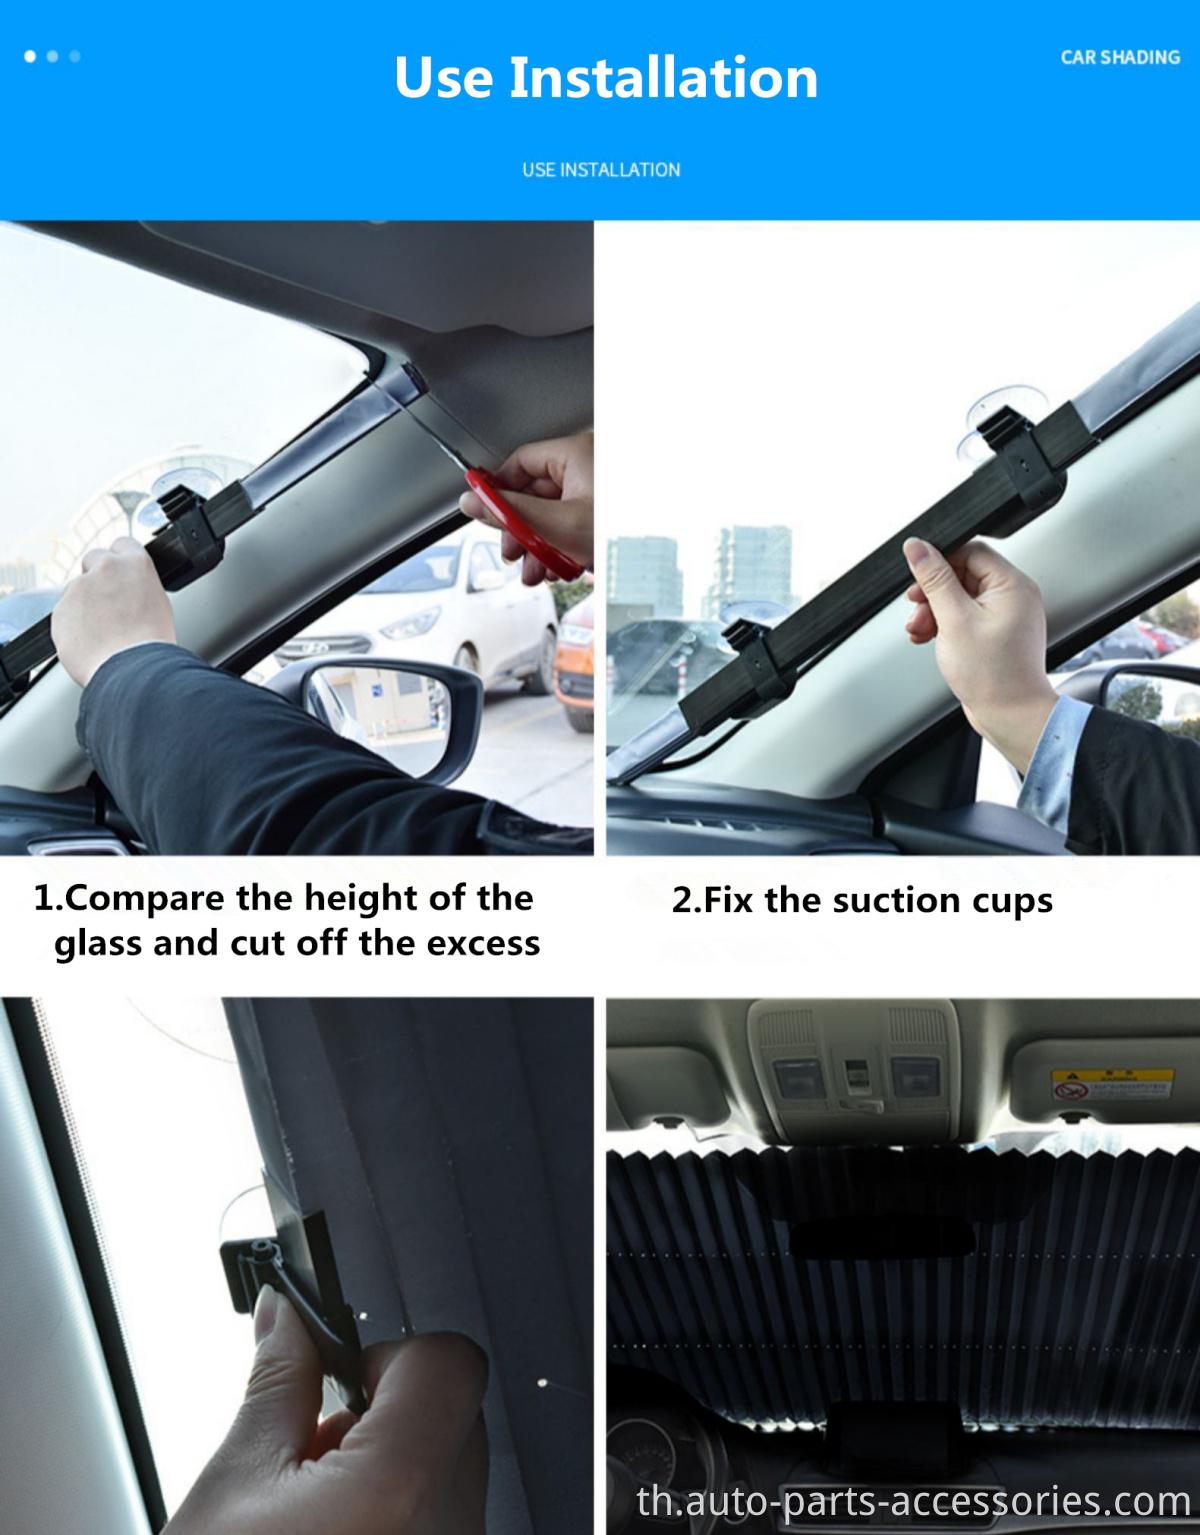 อัพเกรดรังสี UV หดอัตโนมัติอัตโนมัติสมาร์ทแฮทช์แบคบล็อกความร้อนที่บังแดดหน้าต่างด้านหน้าสำหรับรถยนต์